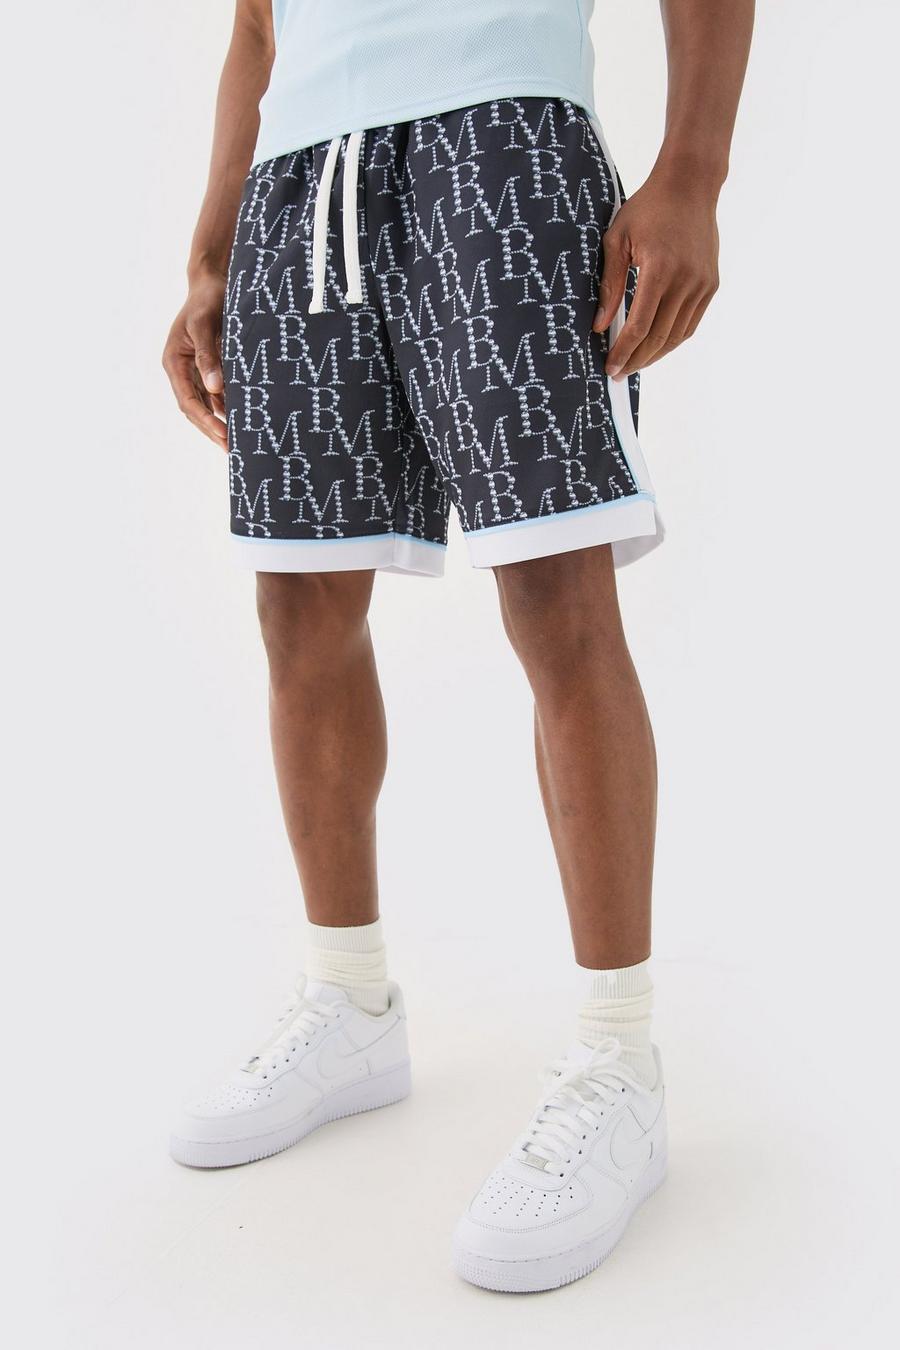 Pantalón corto holgado de baloncesto de malla con estampado BM, Black